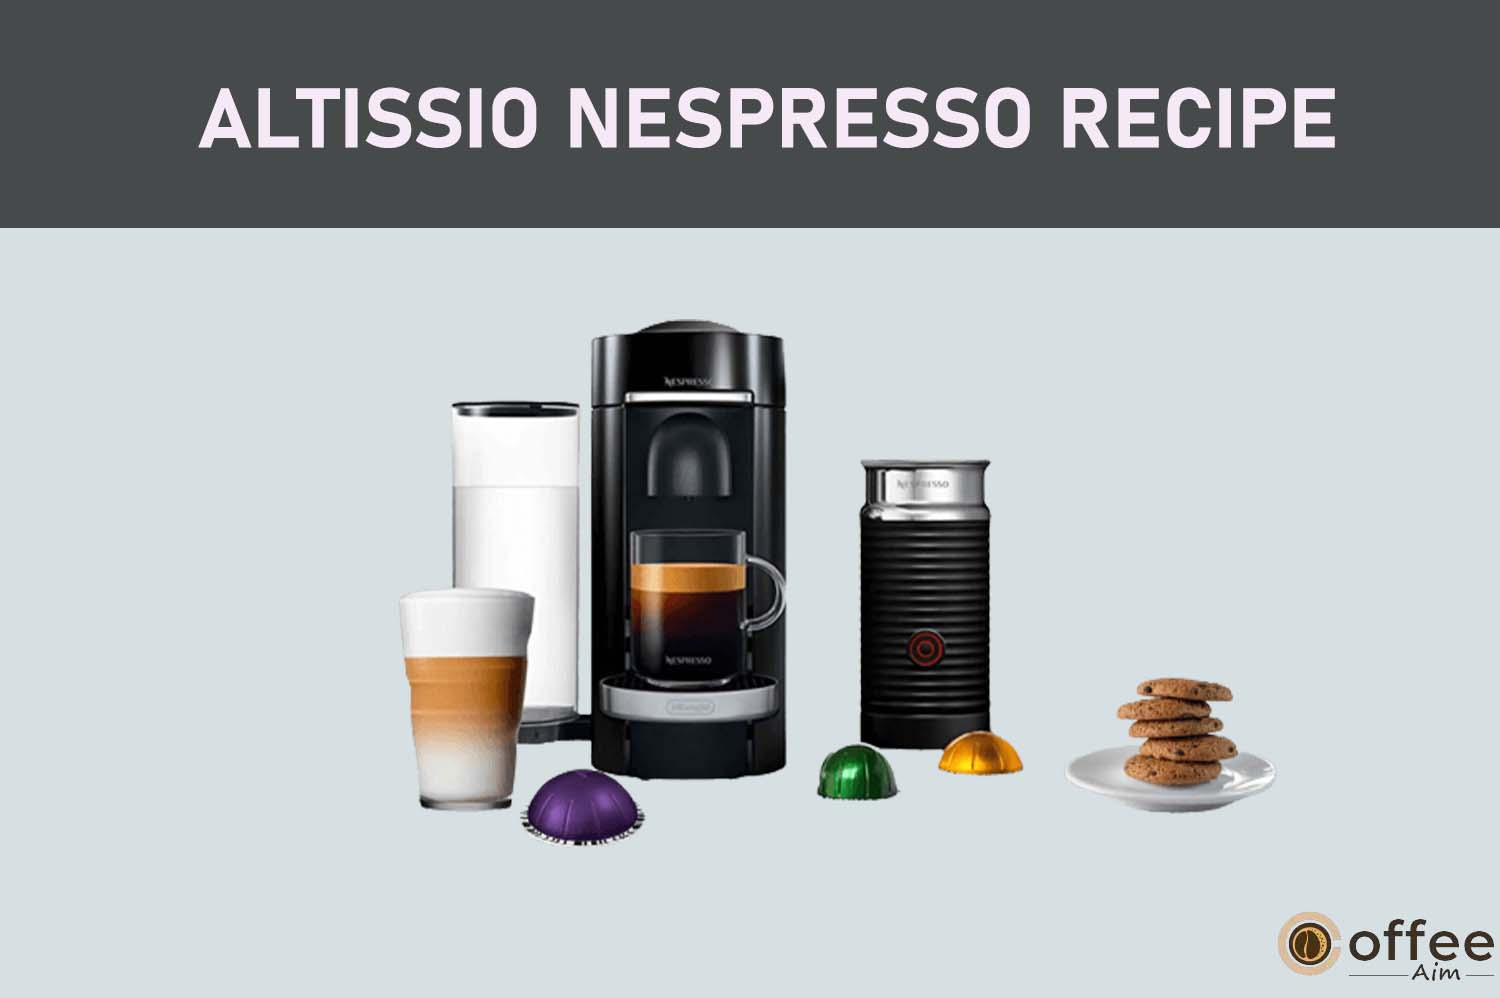 Featured image for the article "Altissio Nespresso Recipe"